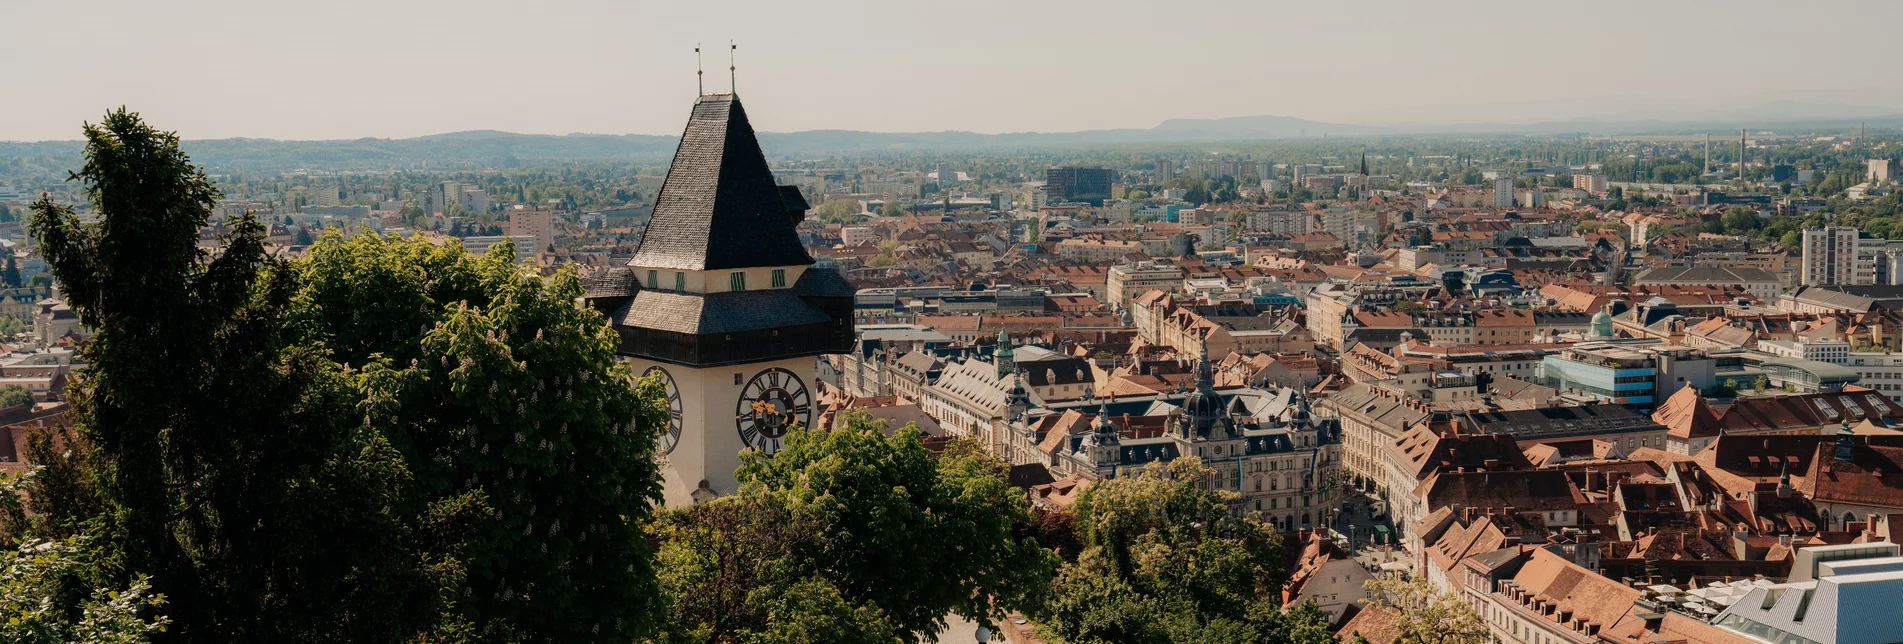 Blick vom Grazer Uhrturm  | © Region Graz | studio draussen